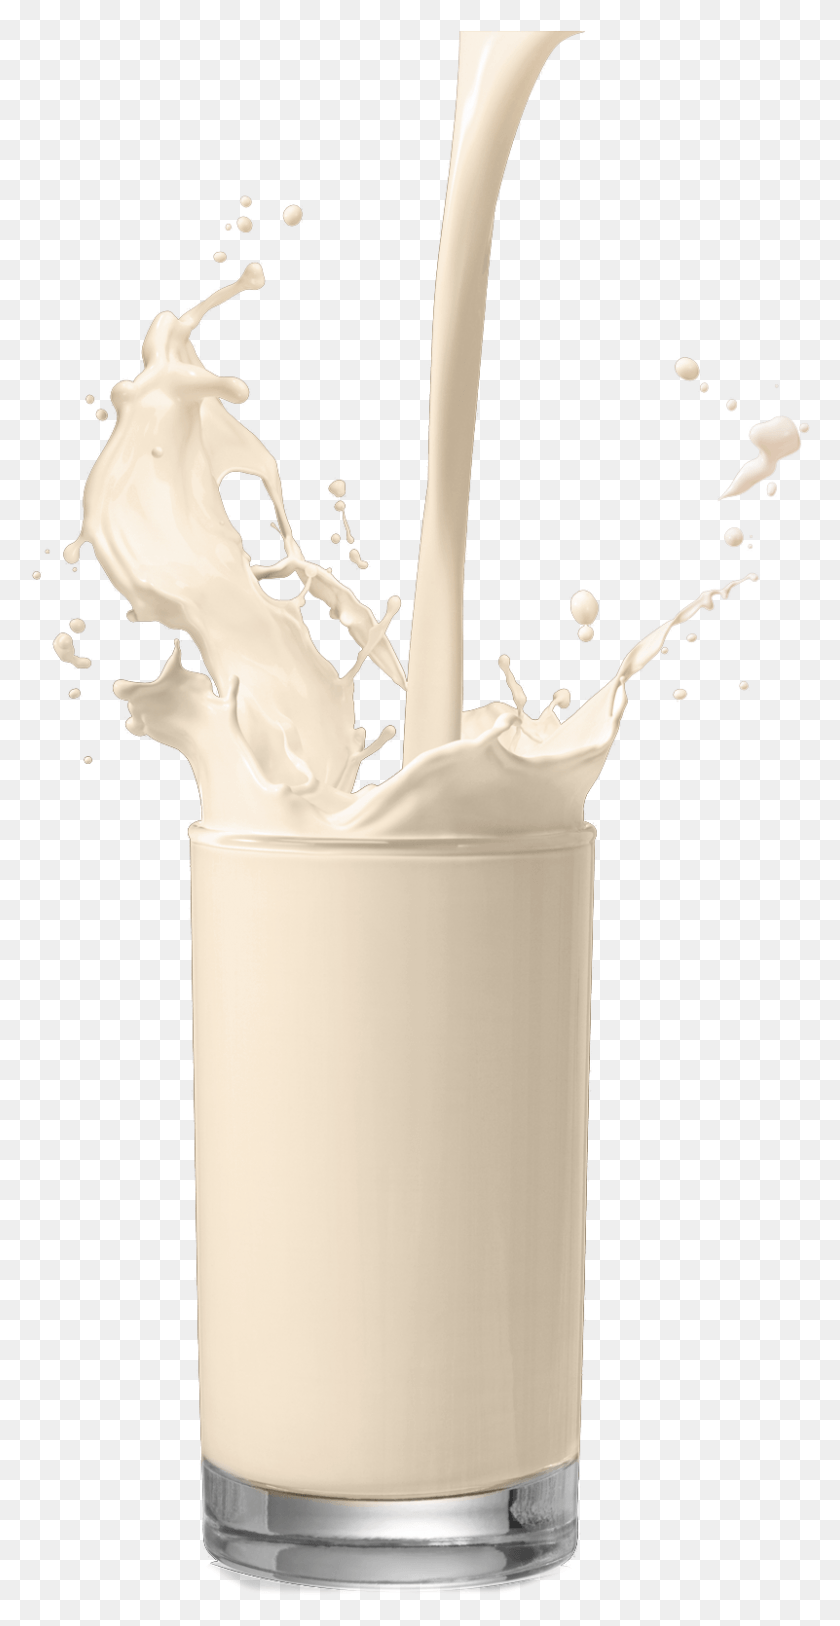 801x1609 Молоко В Стакане, Молоко В Стакане, Напиток, Напиток, Молочные Продукты Hd Png Скачать